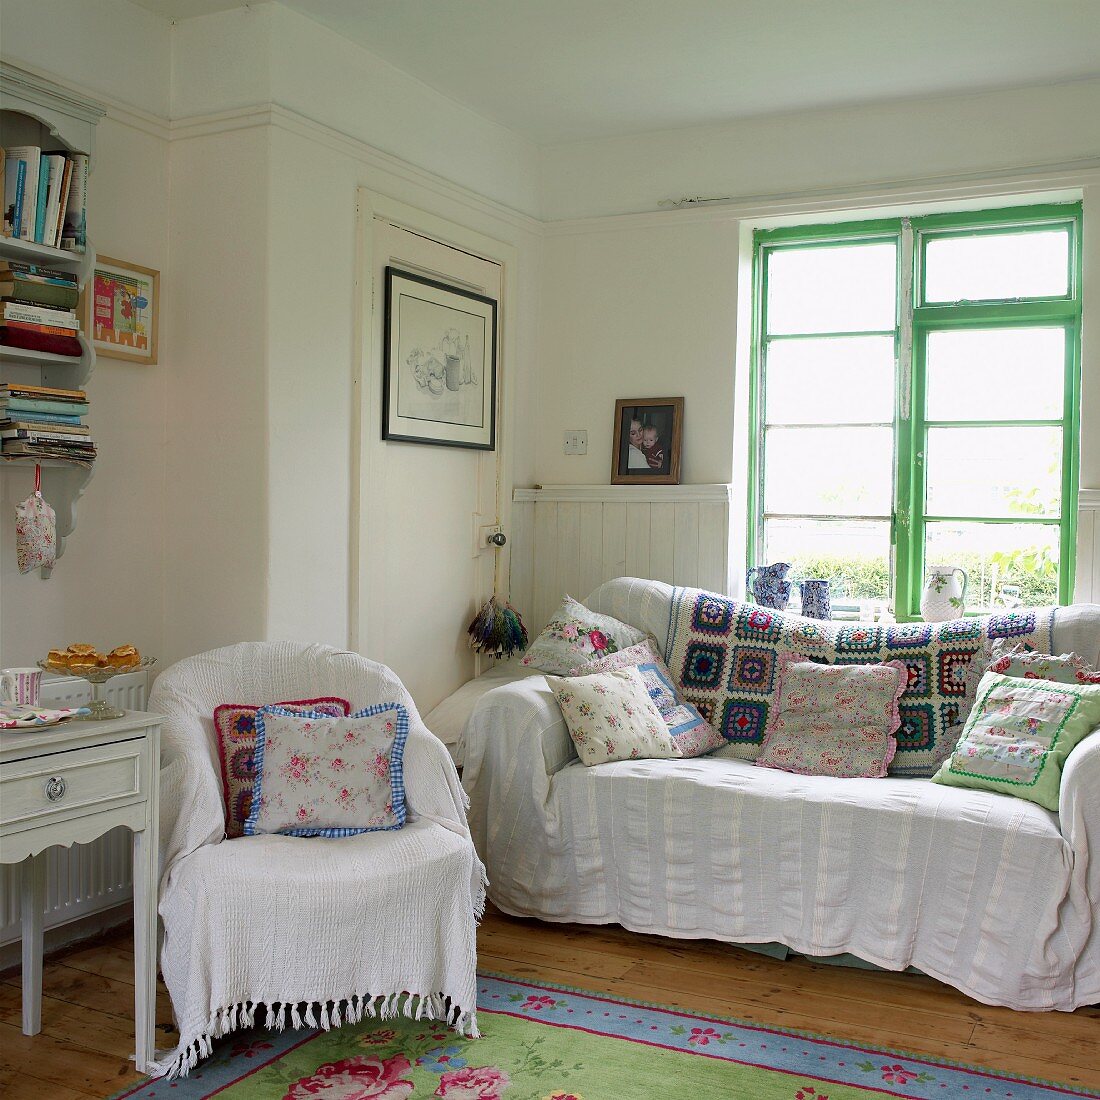 Wohnzimmer im Landhausstil mit weissen Decken, Patchwork und geblümten Kissen auf Sessel und Sofa